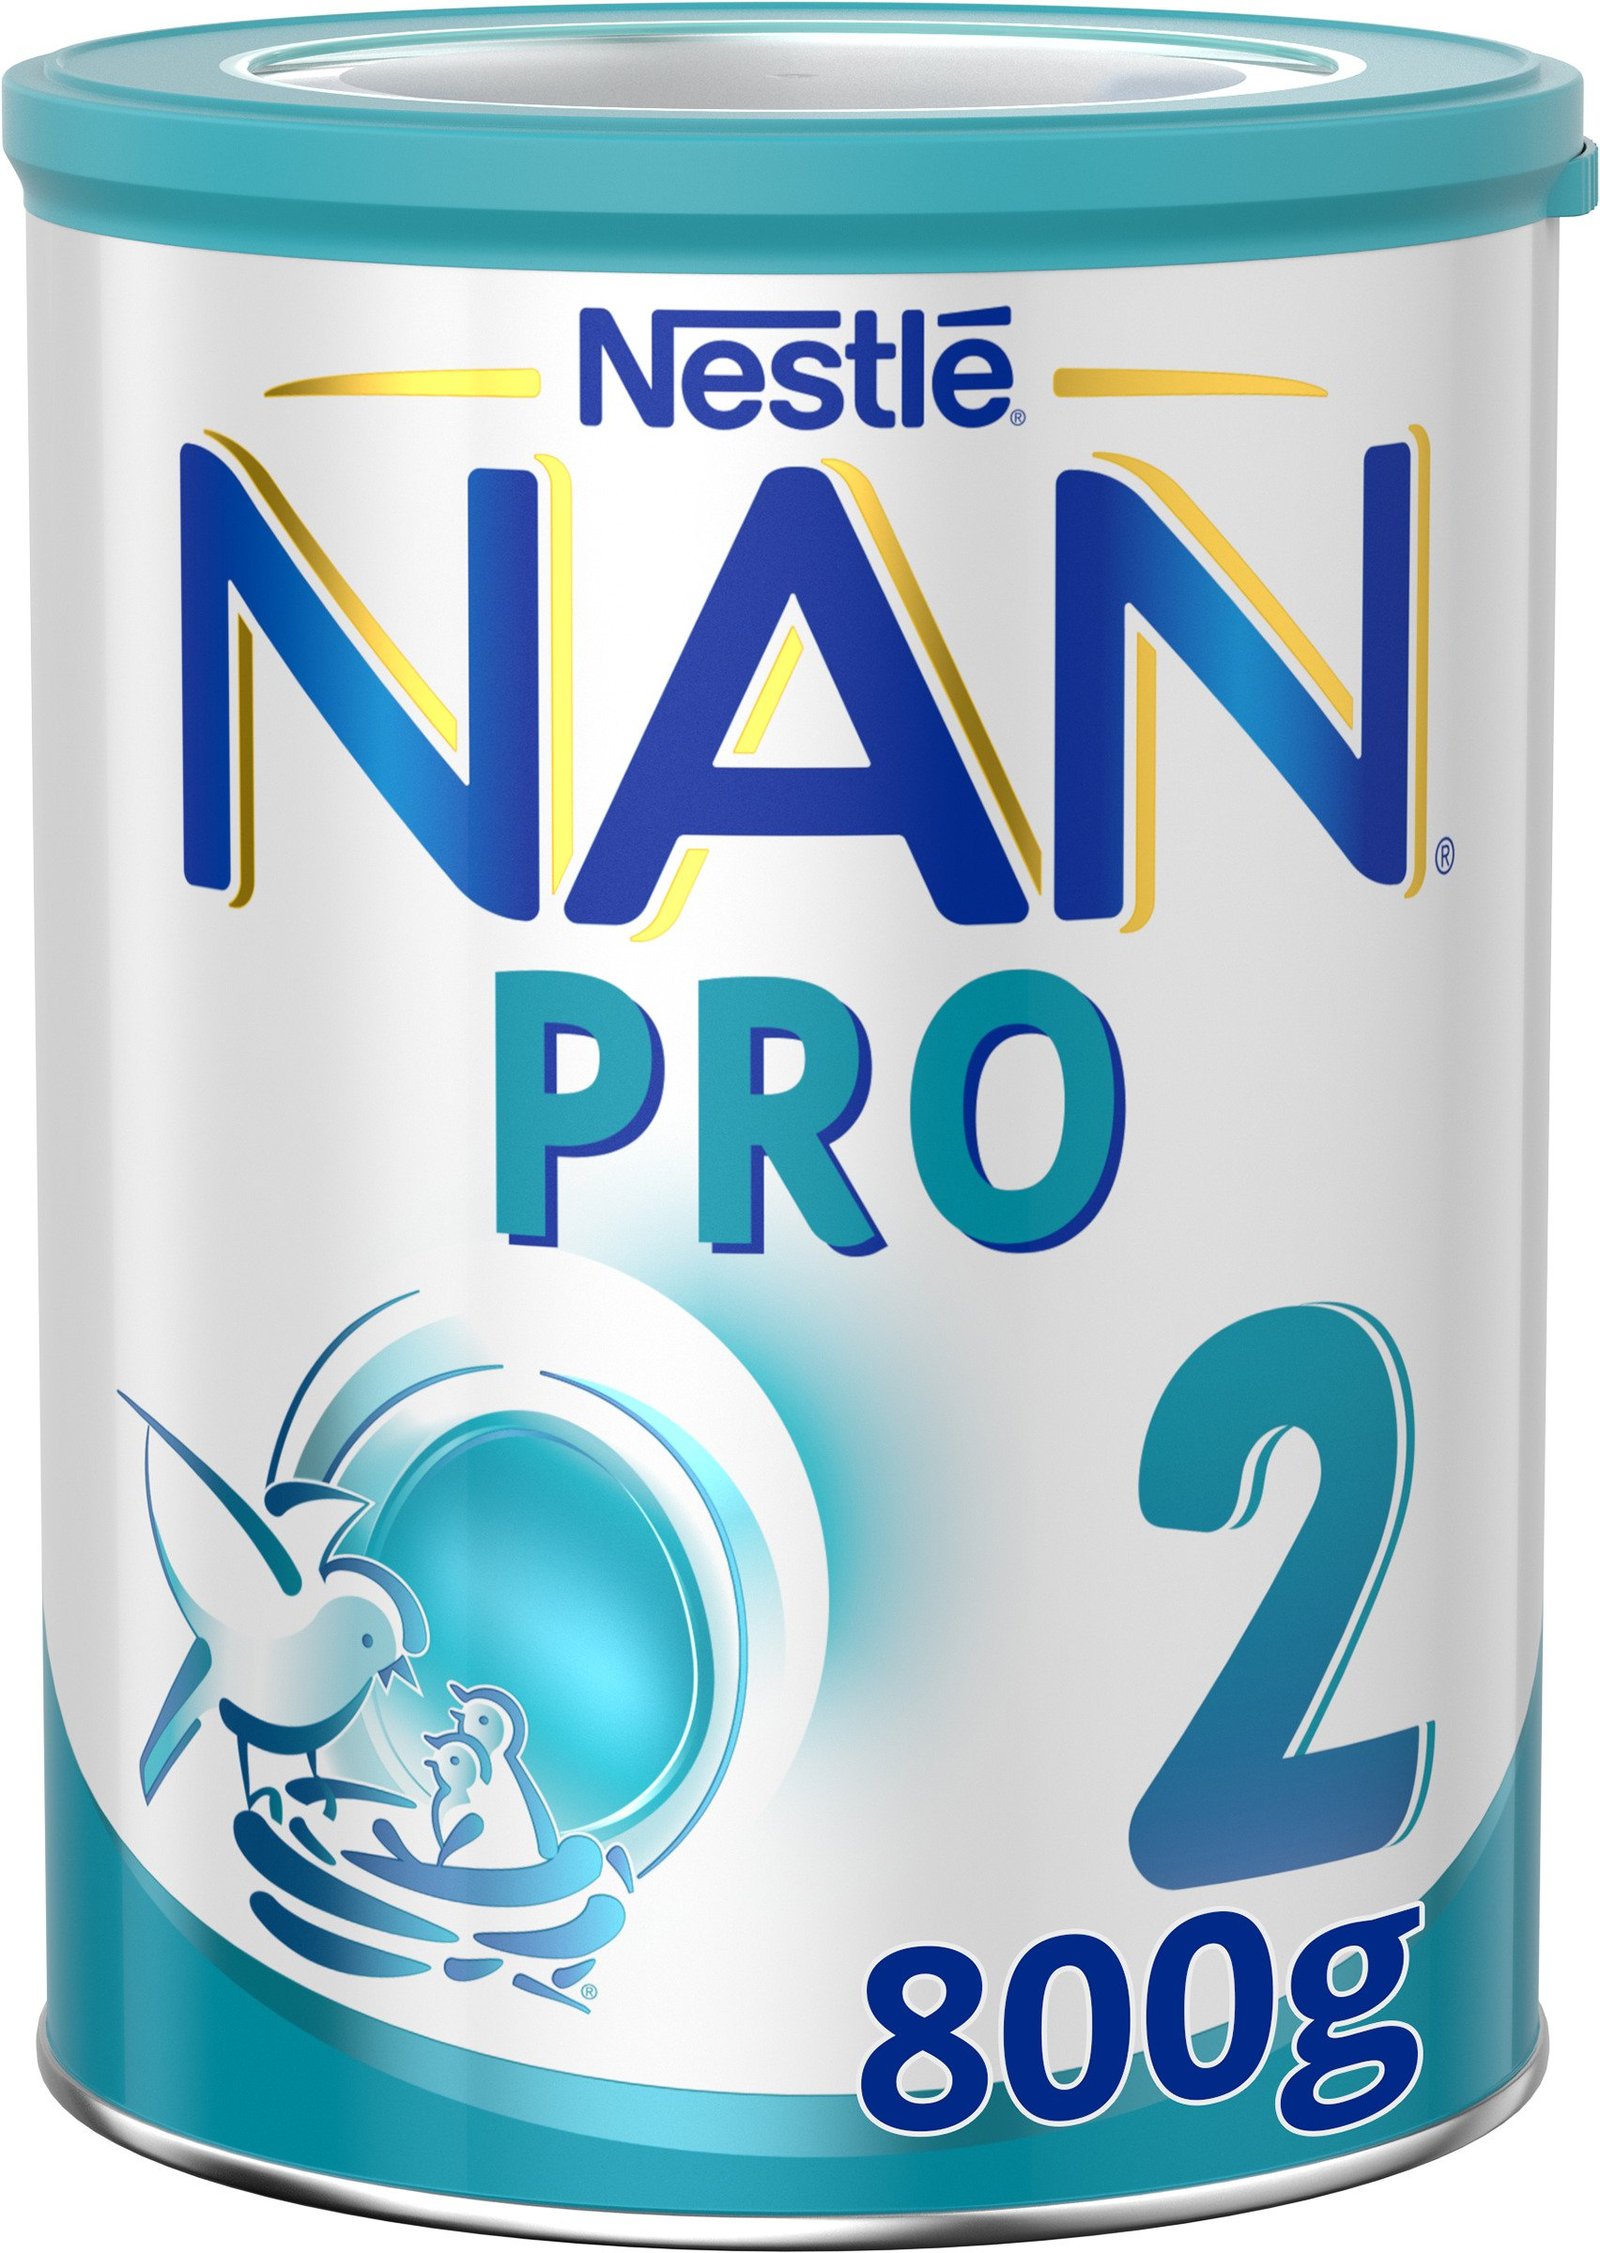 Nestlé NAN PRO 2 Tillskottsnäring 800 g